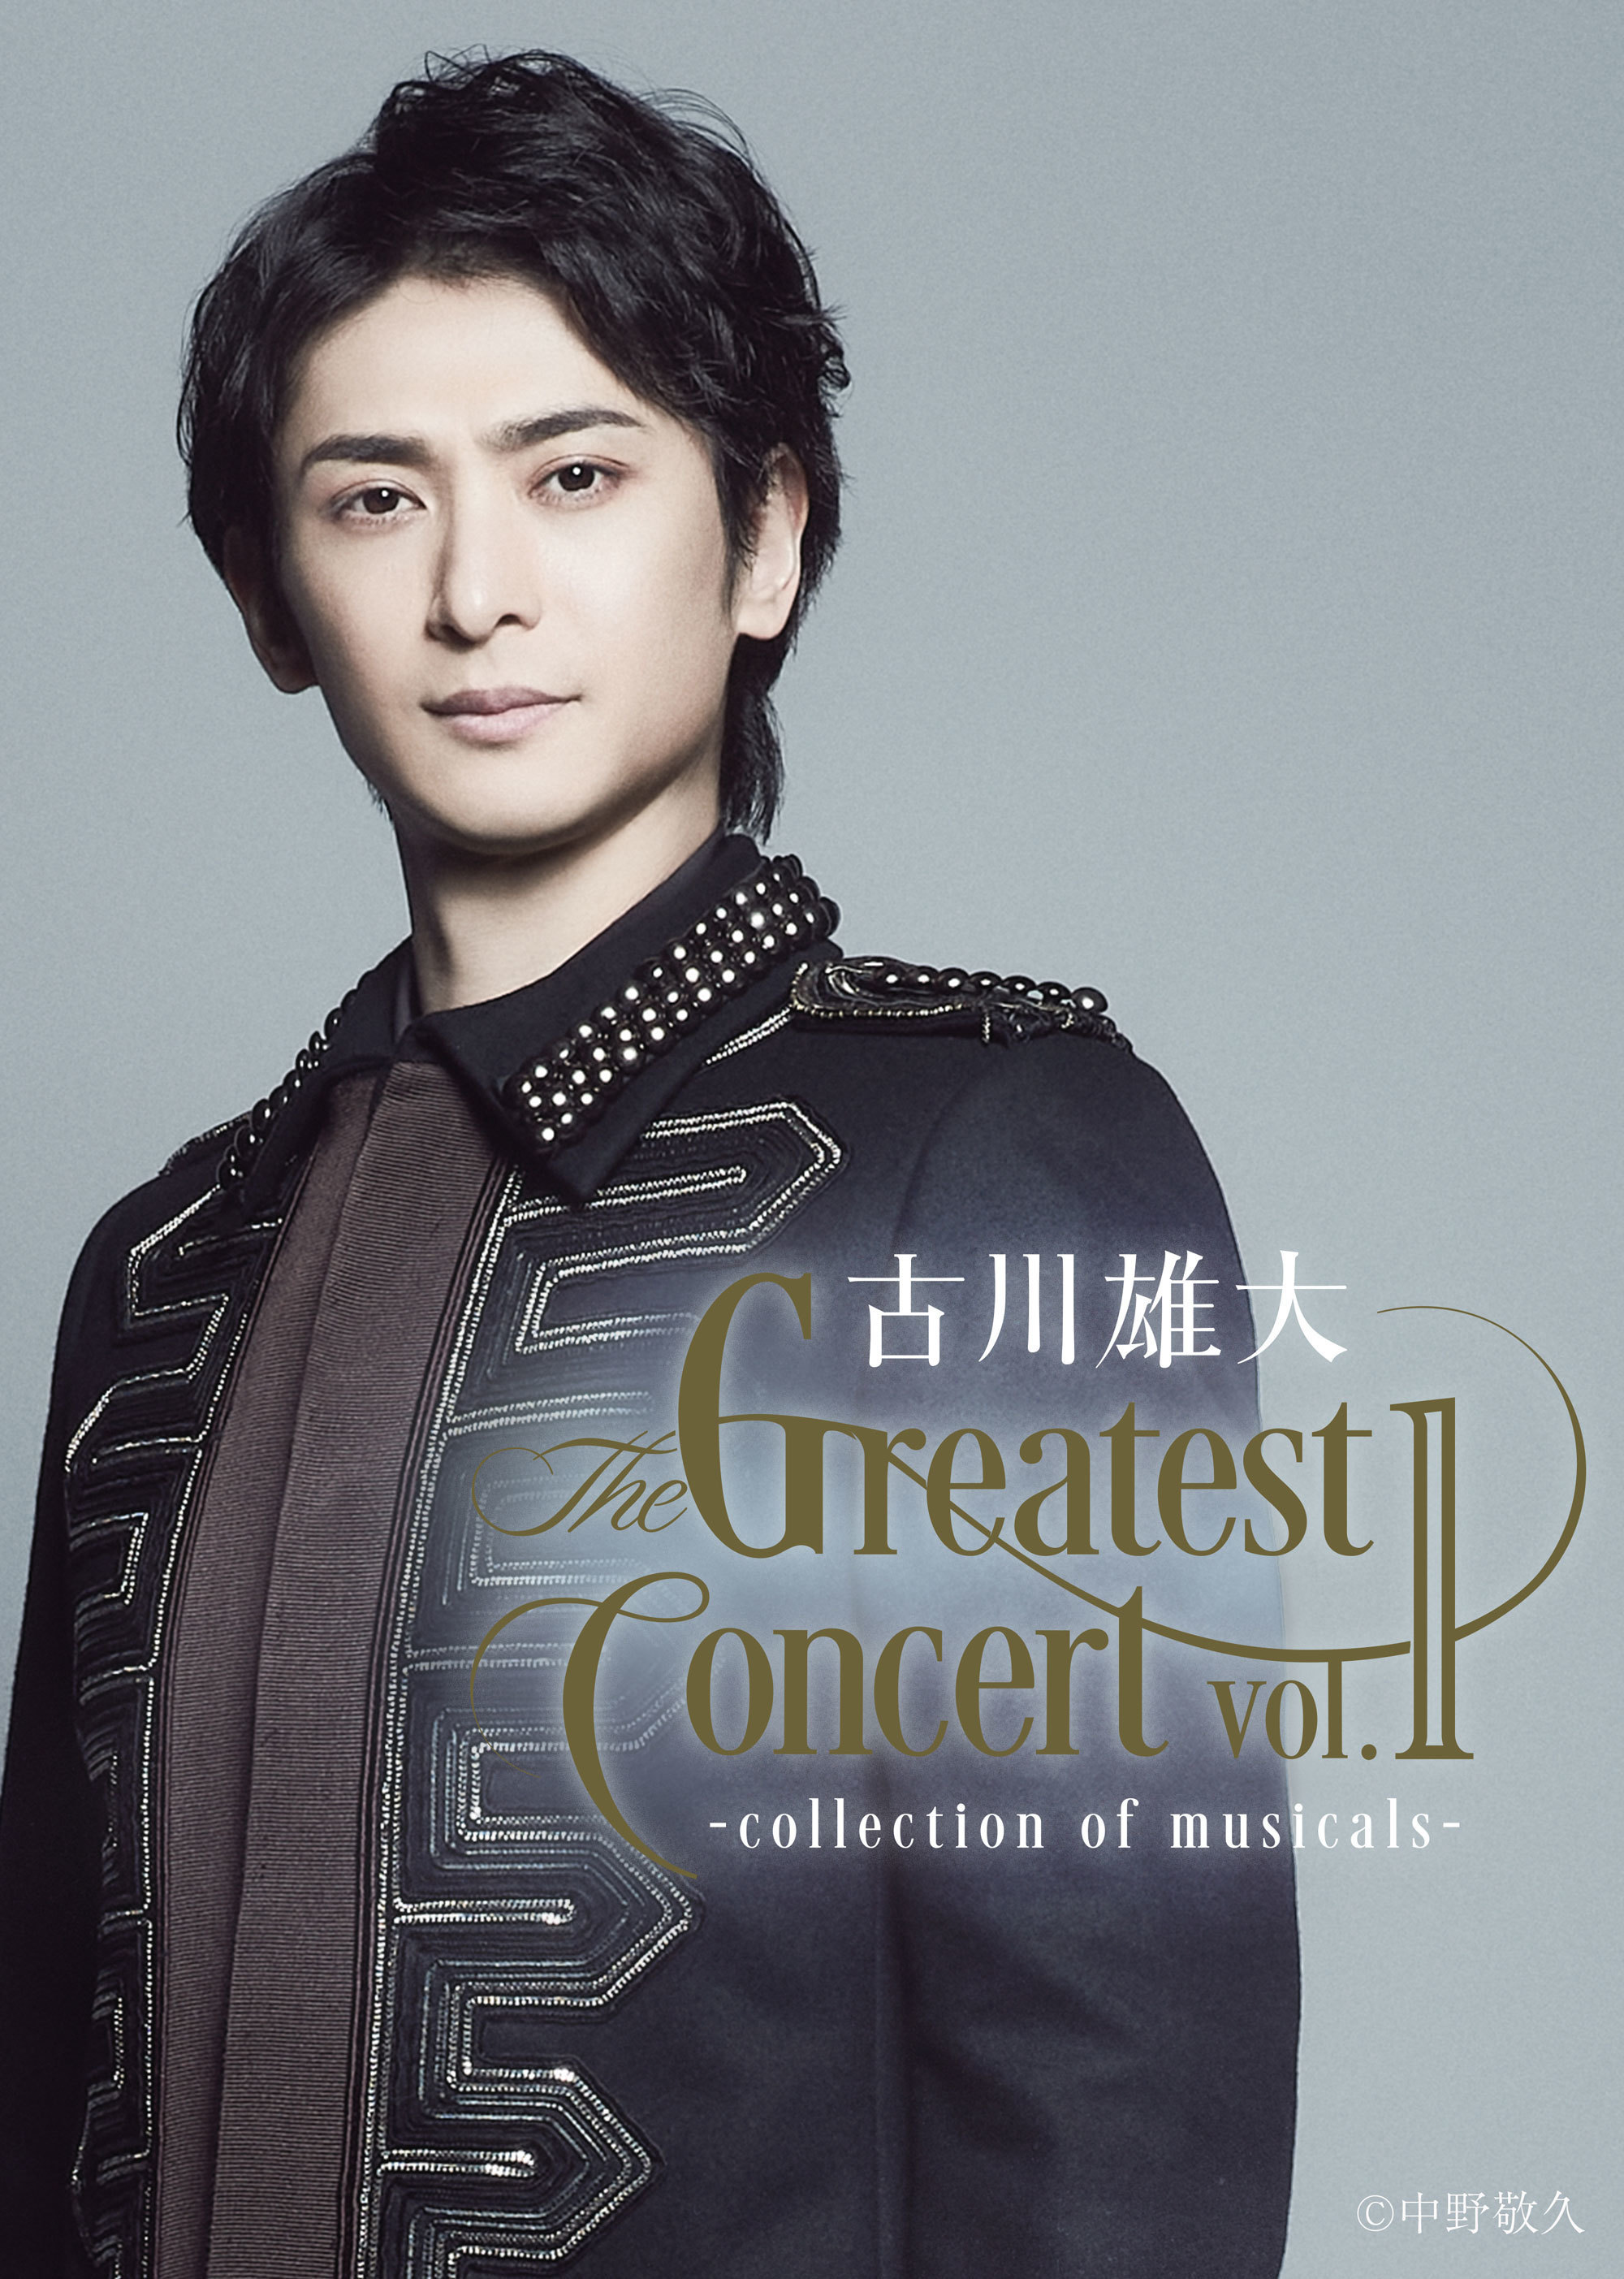 古川雄大 The Greatest Concert vol.1 -collection of musicals